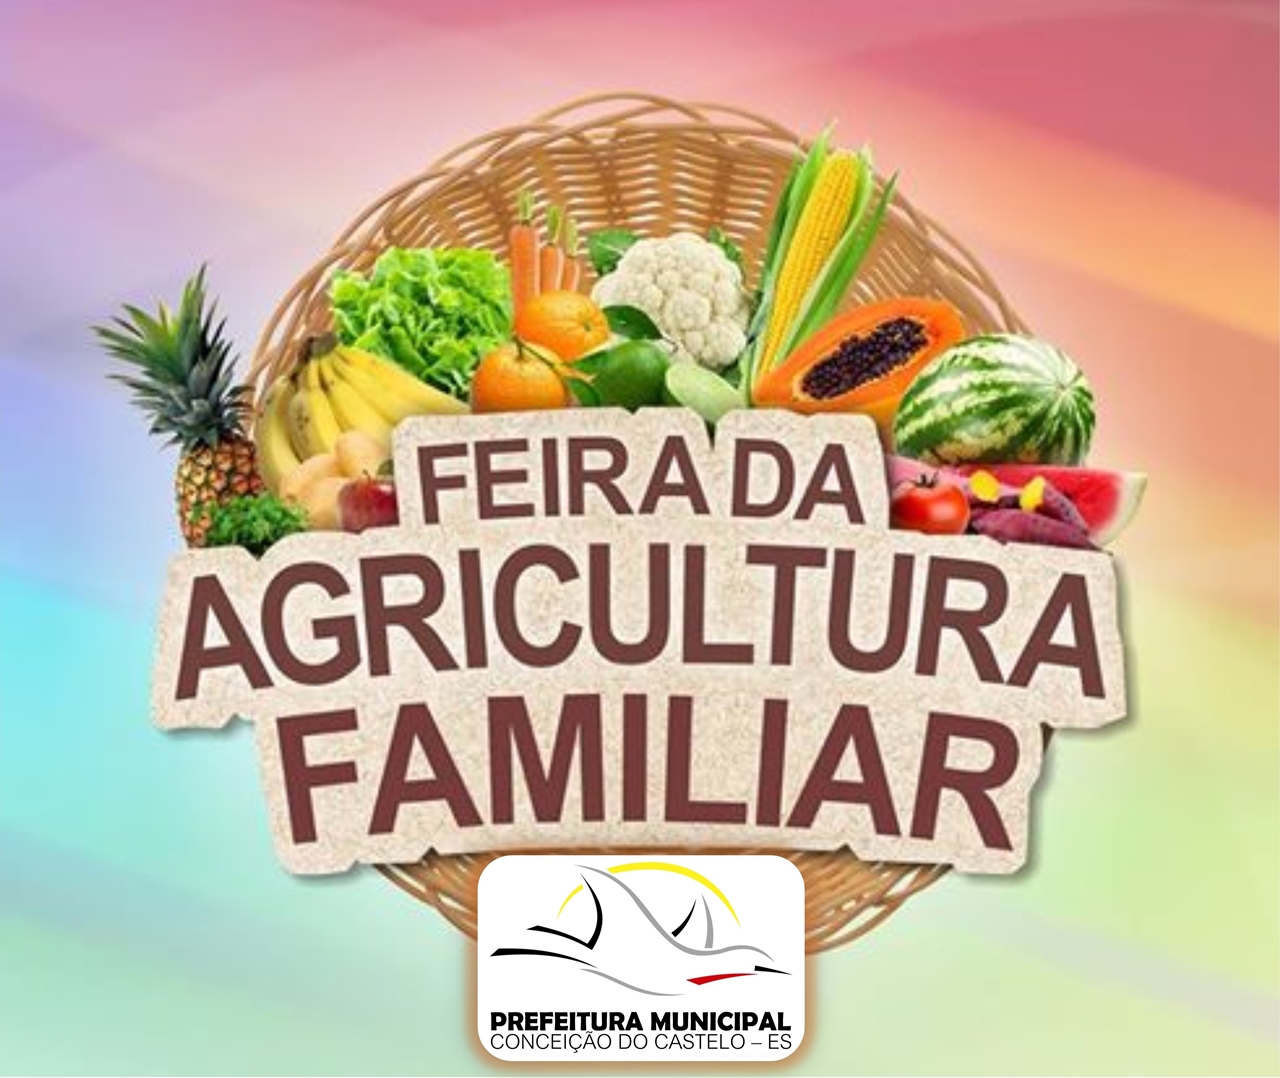 Feira da agricultura familiar em Conceição do Castelo será realizada nesta quarta-feira (25)